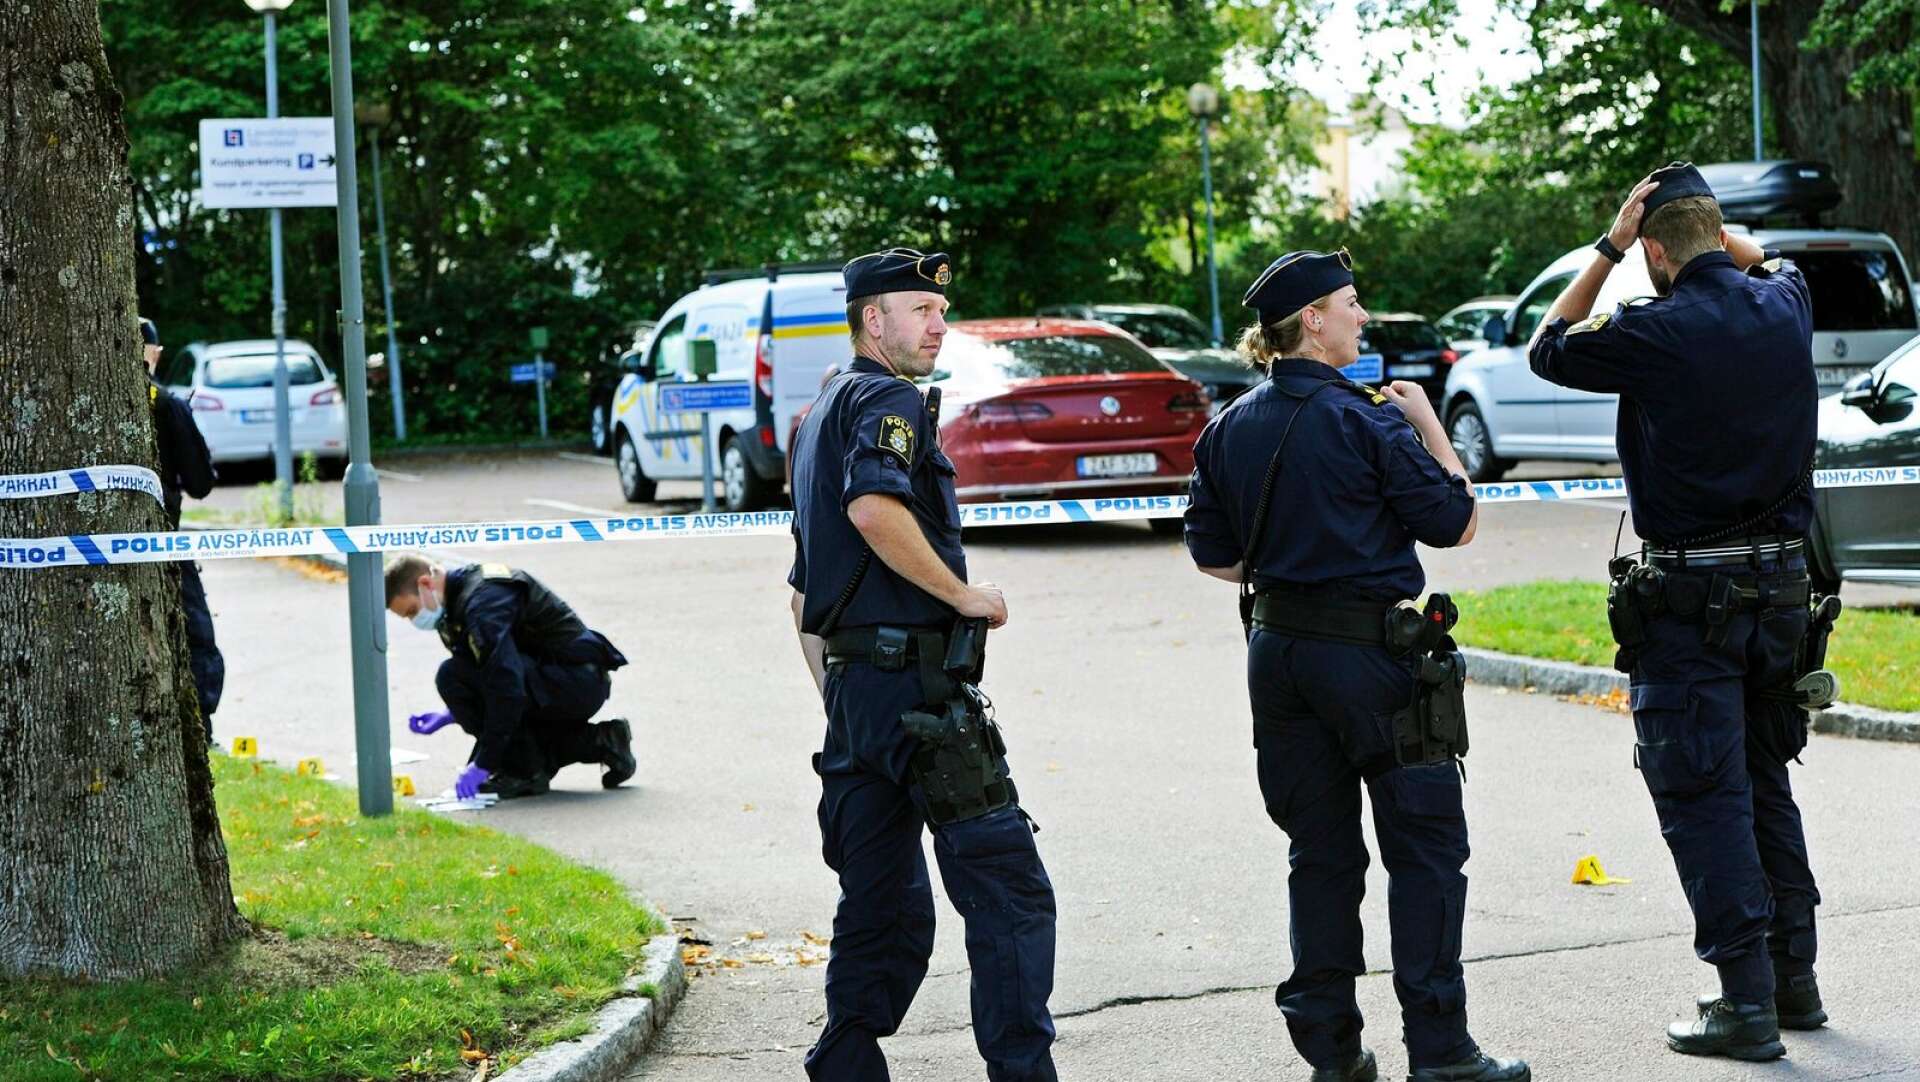 Det var den 2 september som polisen larmades till Stadsträdgården där ett mordförsök ägt rum.